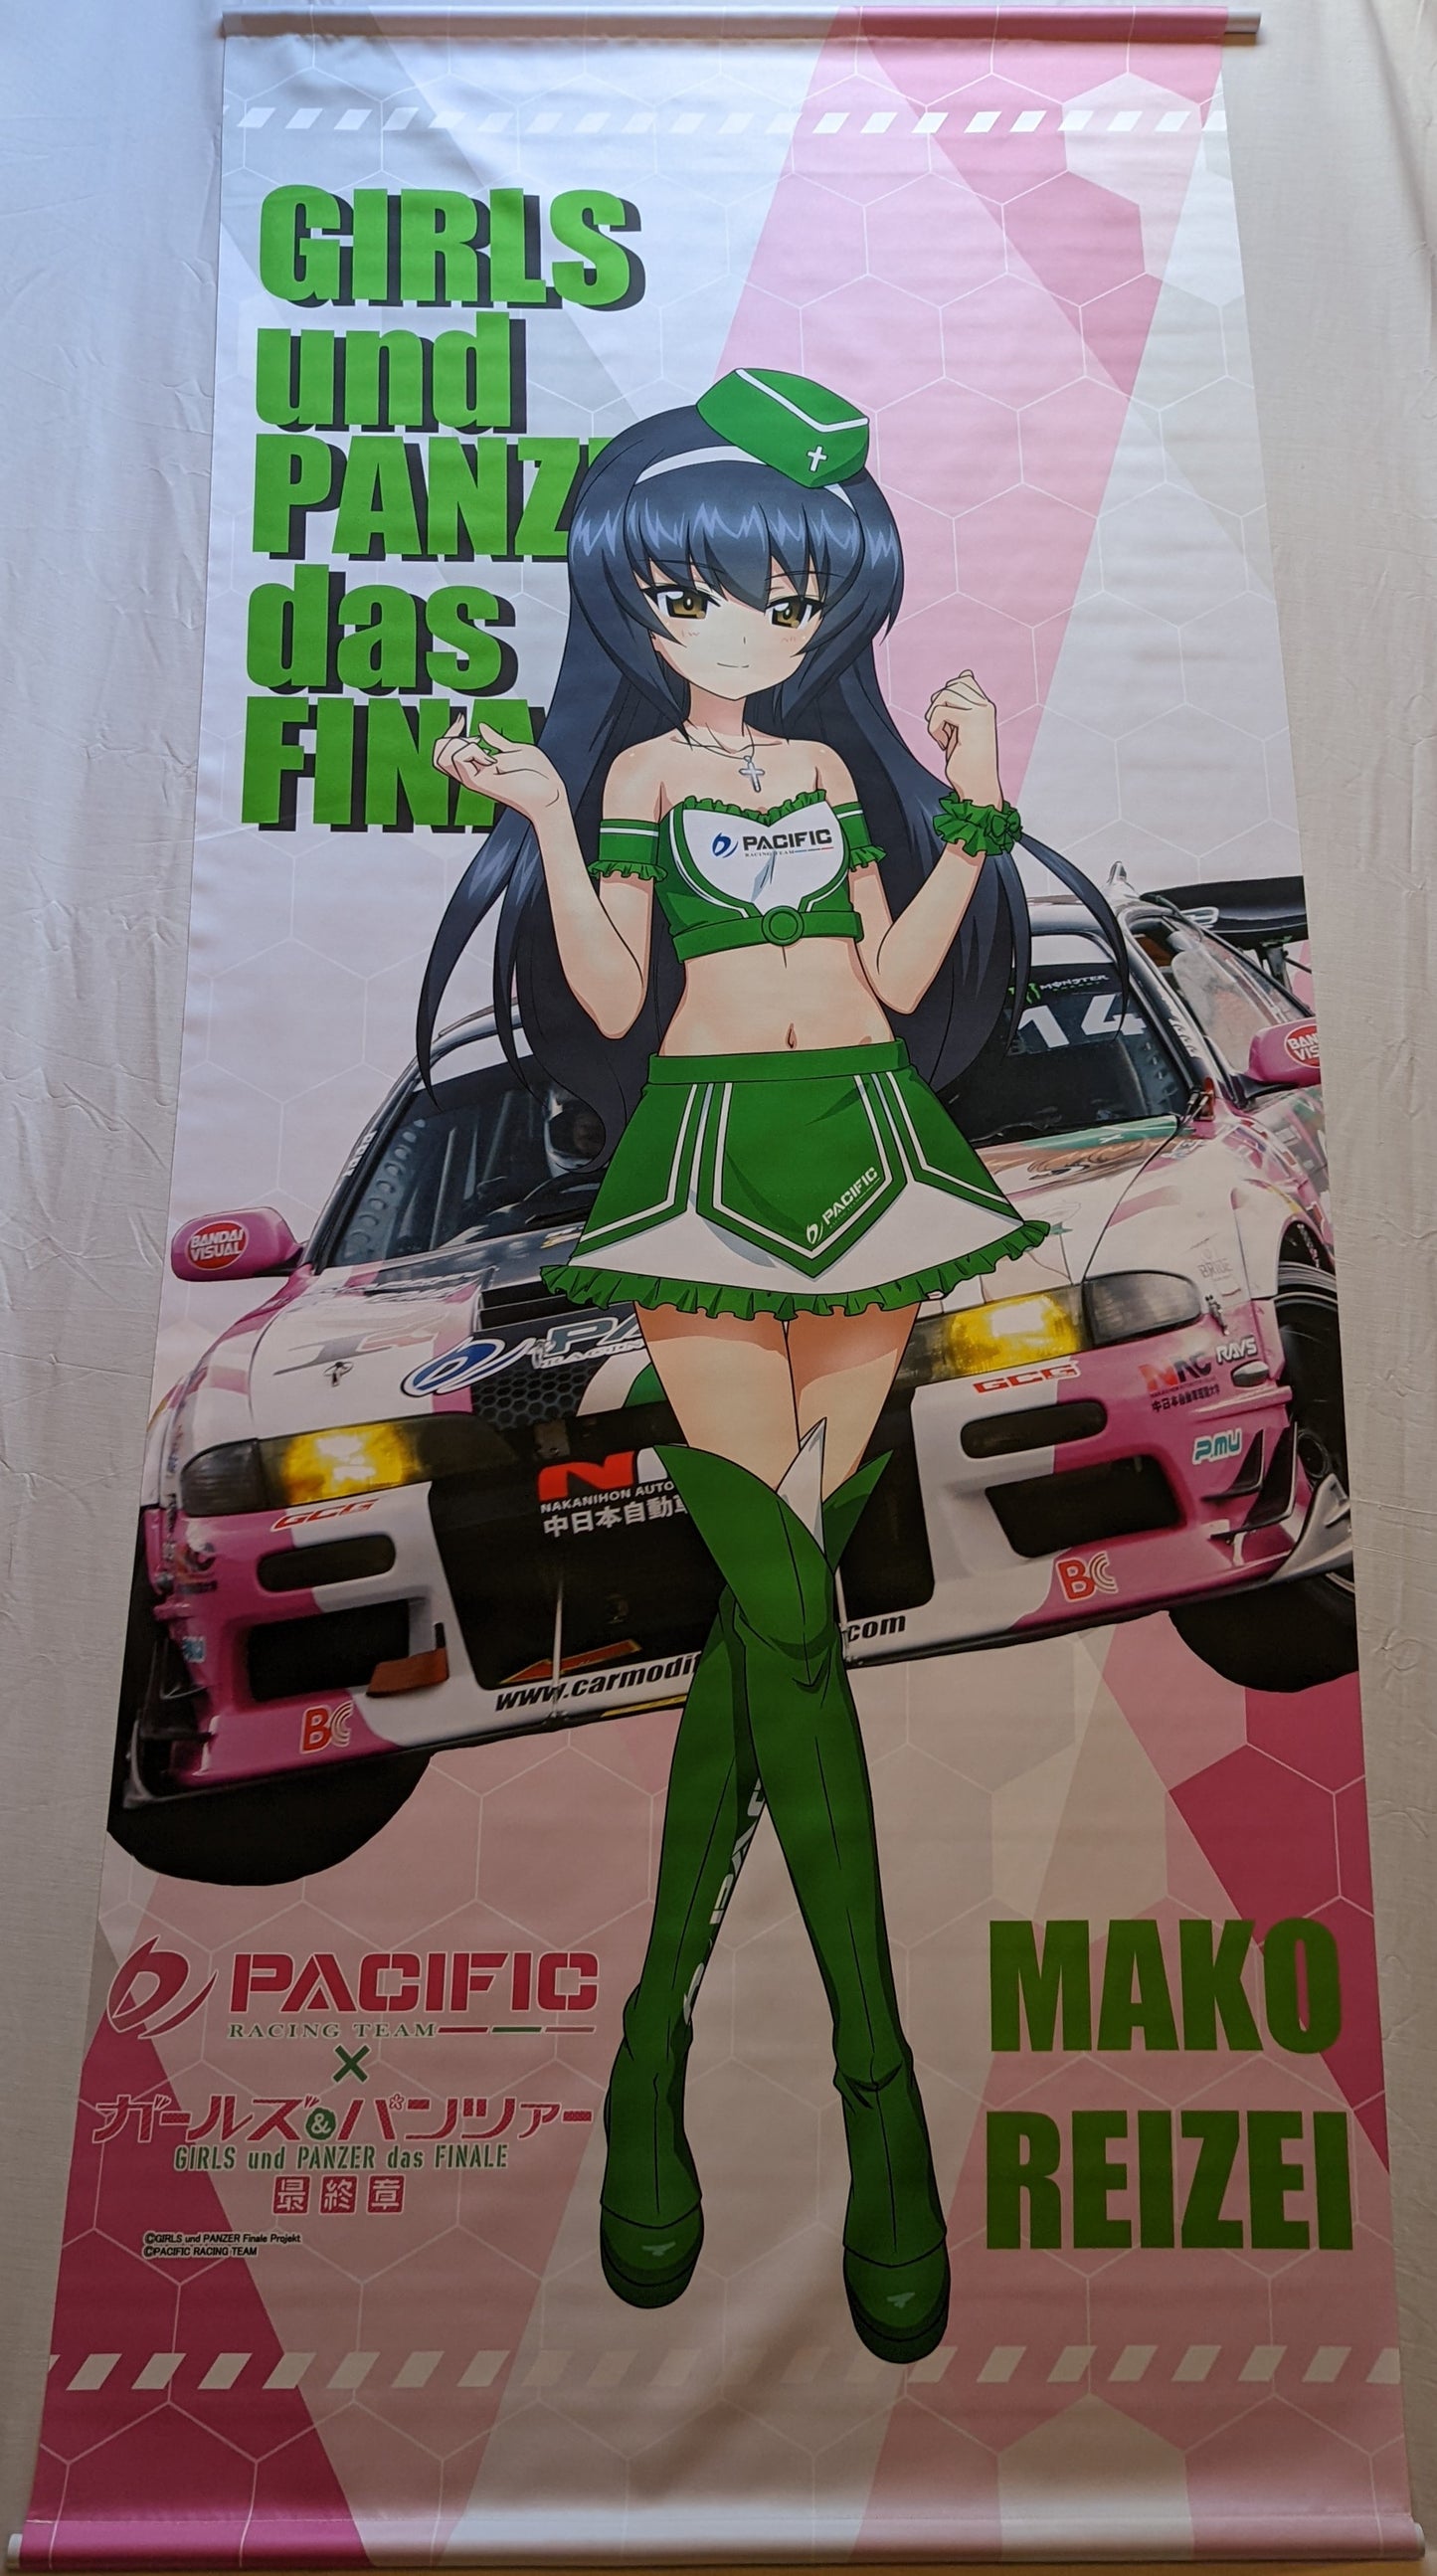 Pacific Racing x Girls und Panzer. Mako Reizei